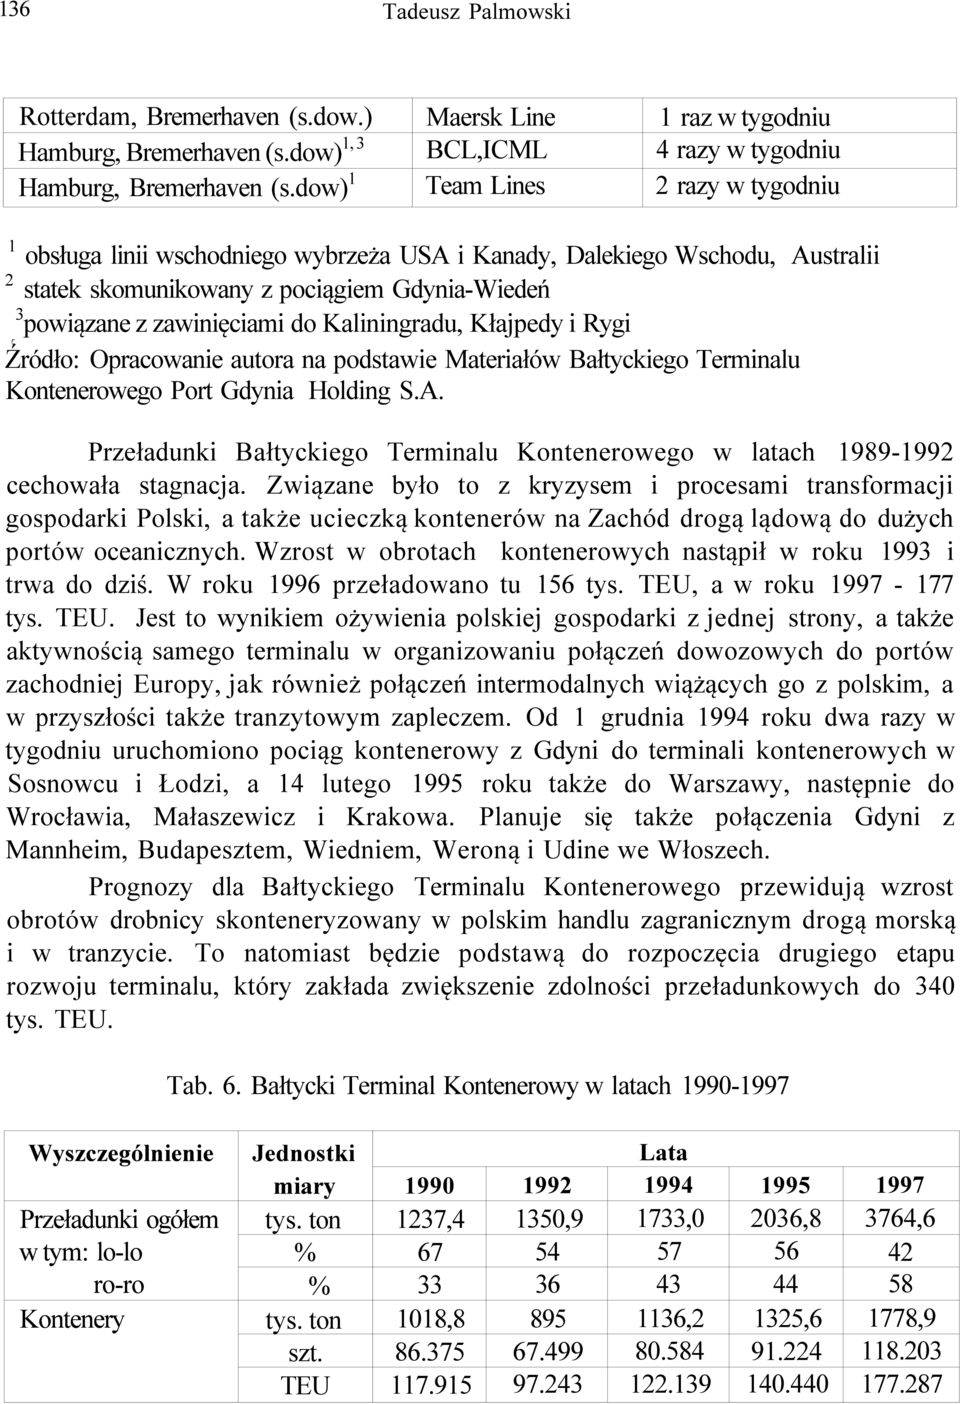 Kaliningadu, Kłajpedy i Rygi Źódło: Opacowanie autoa na podstawie Mateiałów Bałtyckiego Teminalu Konteneowego Pot Gdynia Holding S.A.